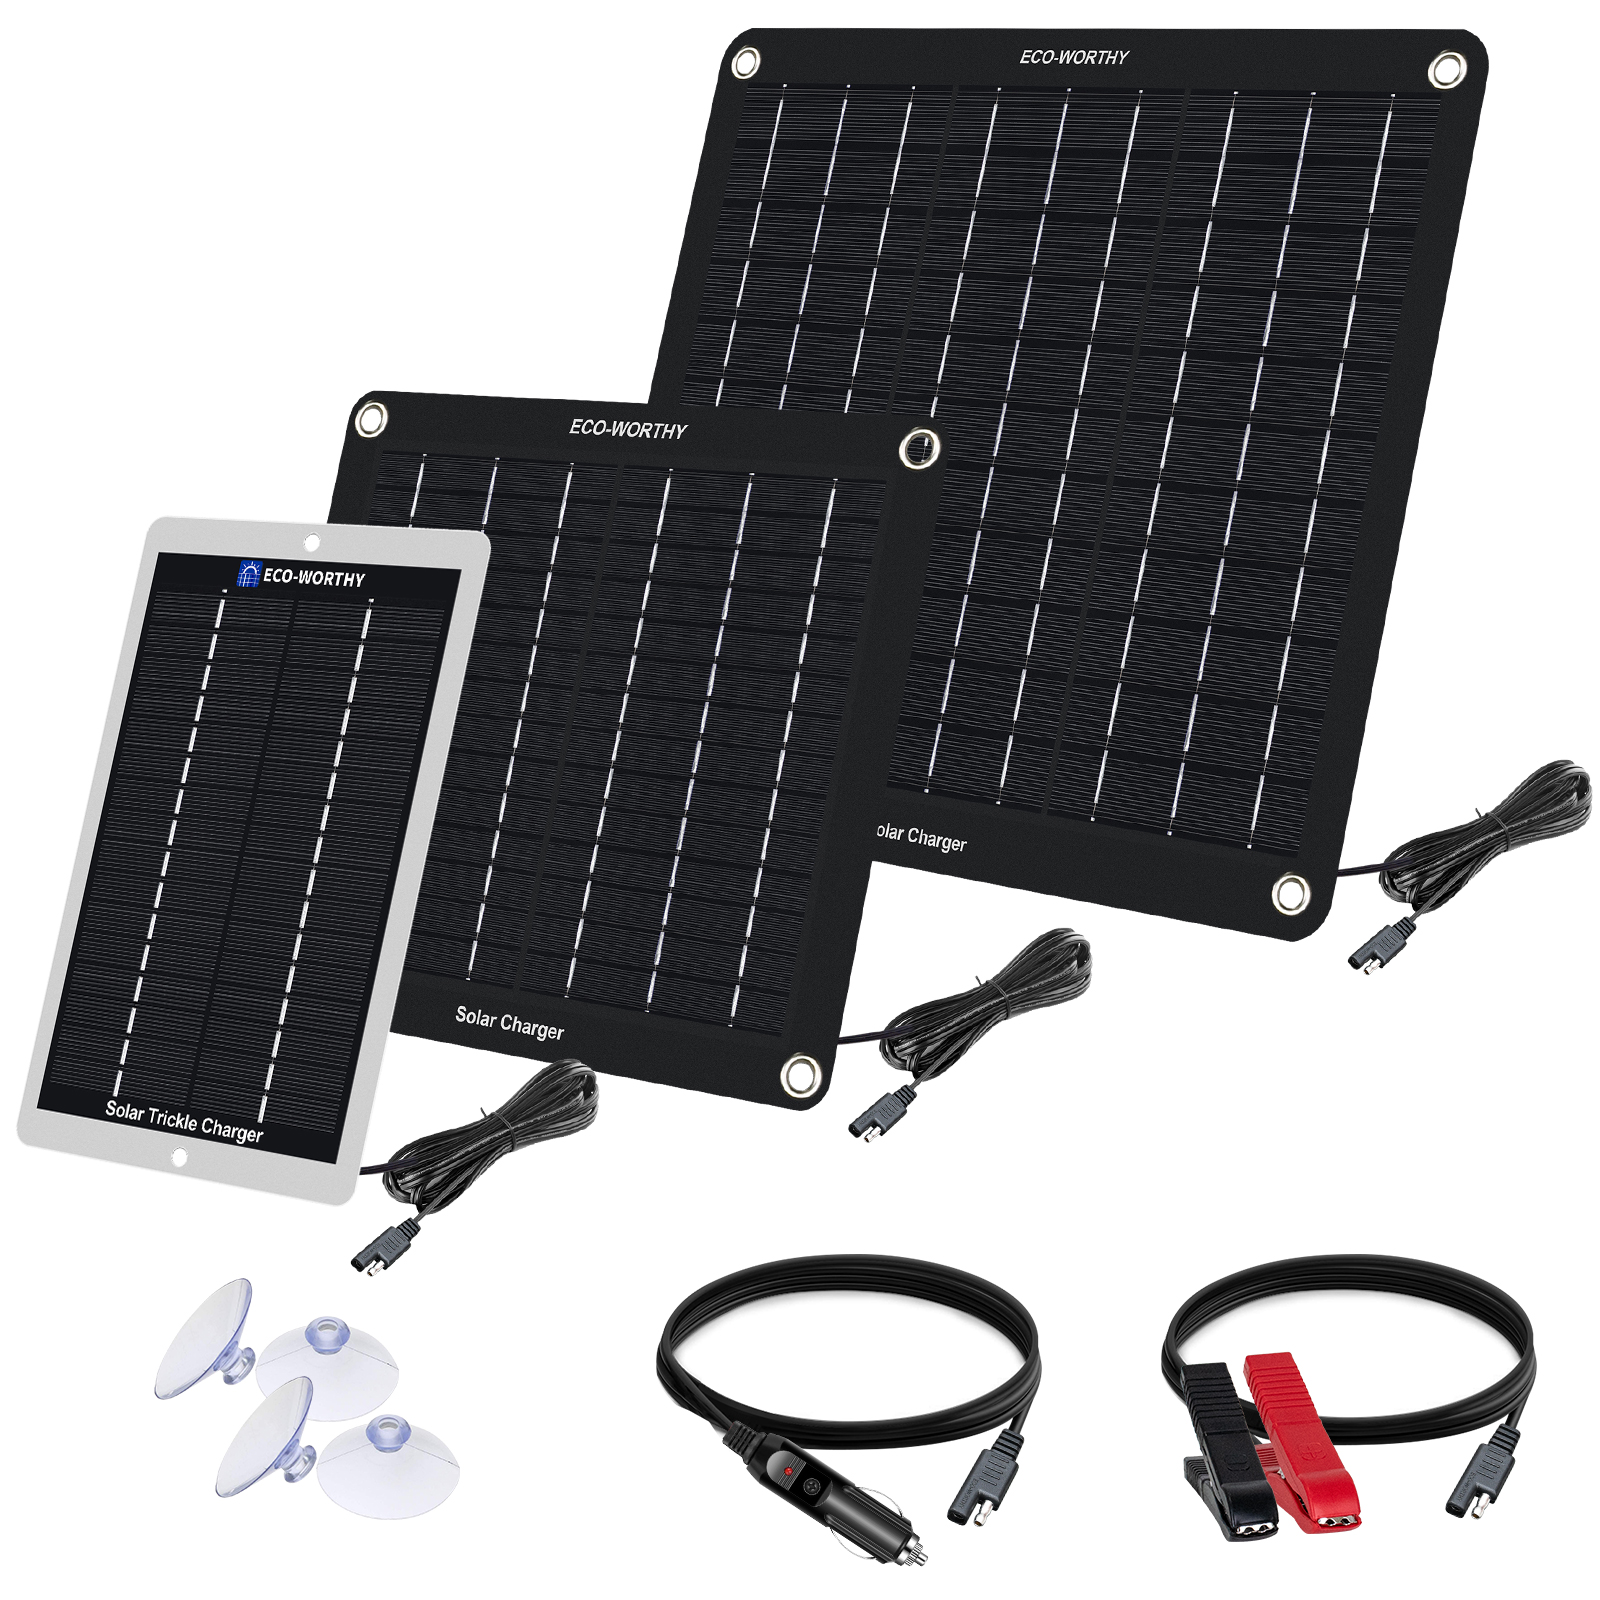 Caricabatterie solare per batterie 12V in auto e barca